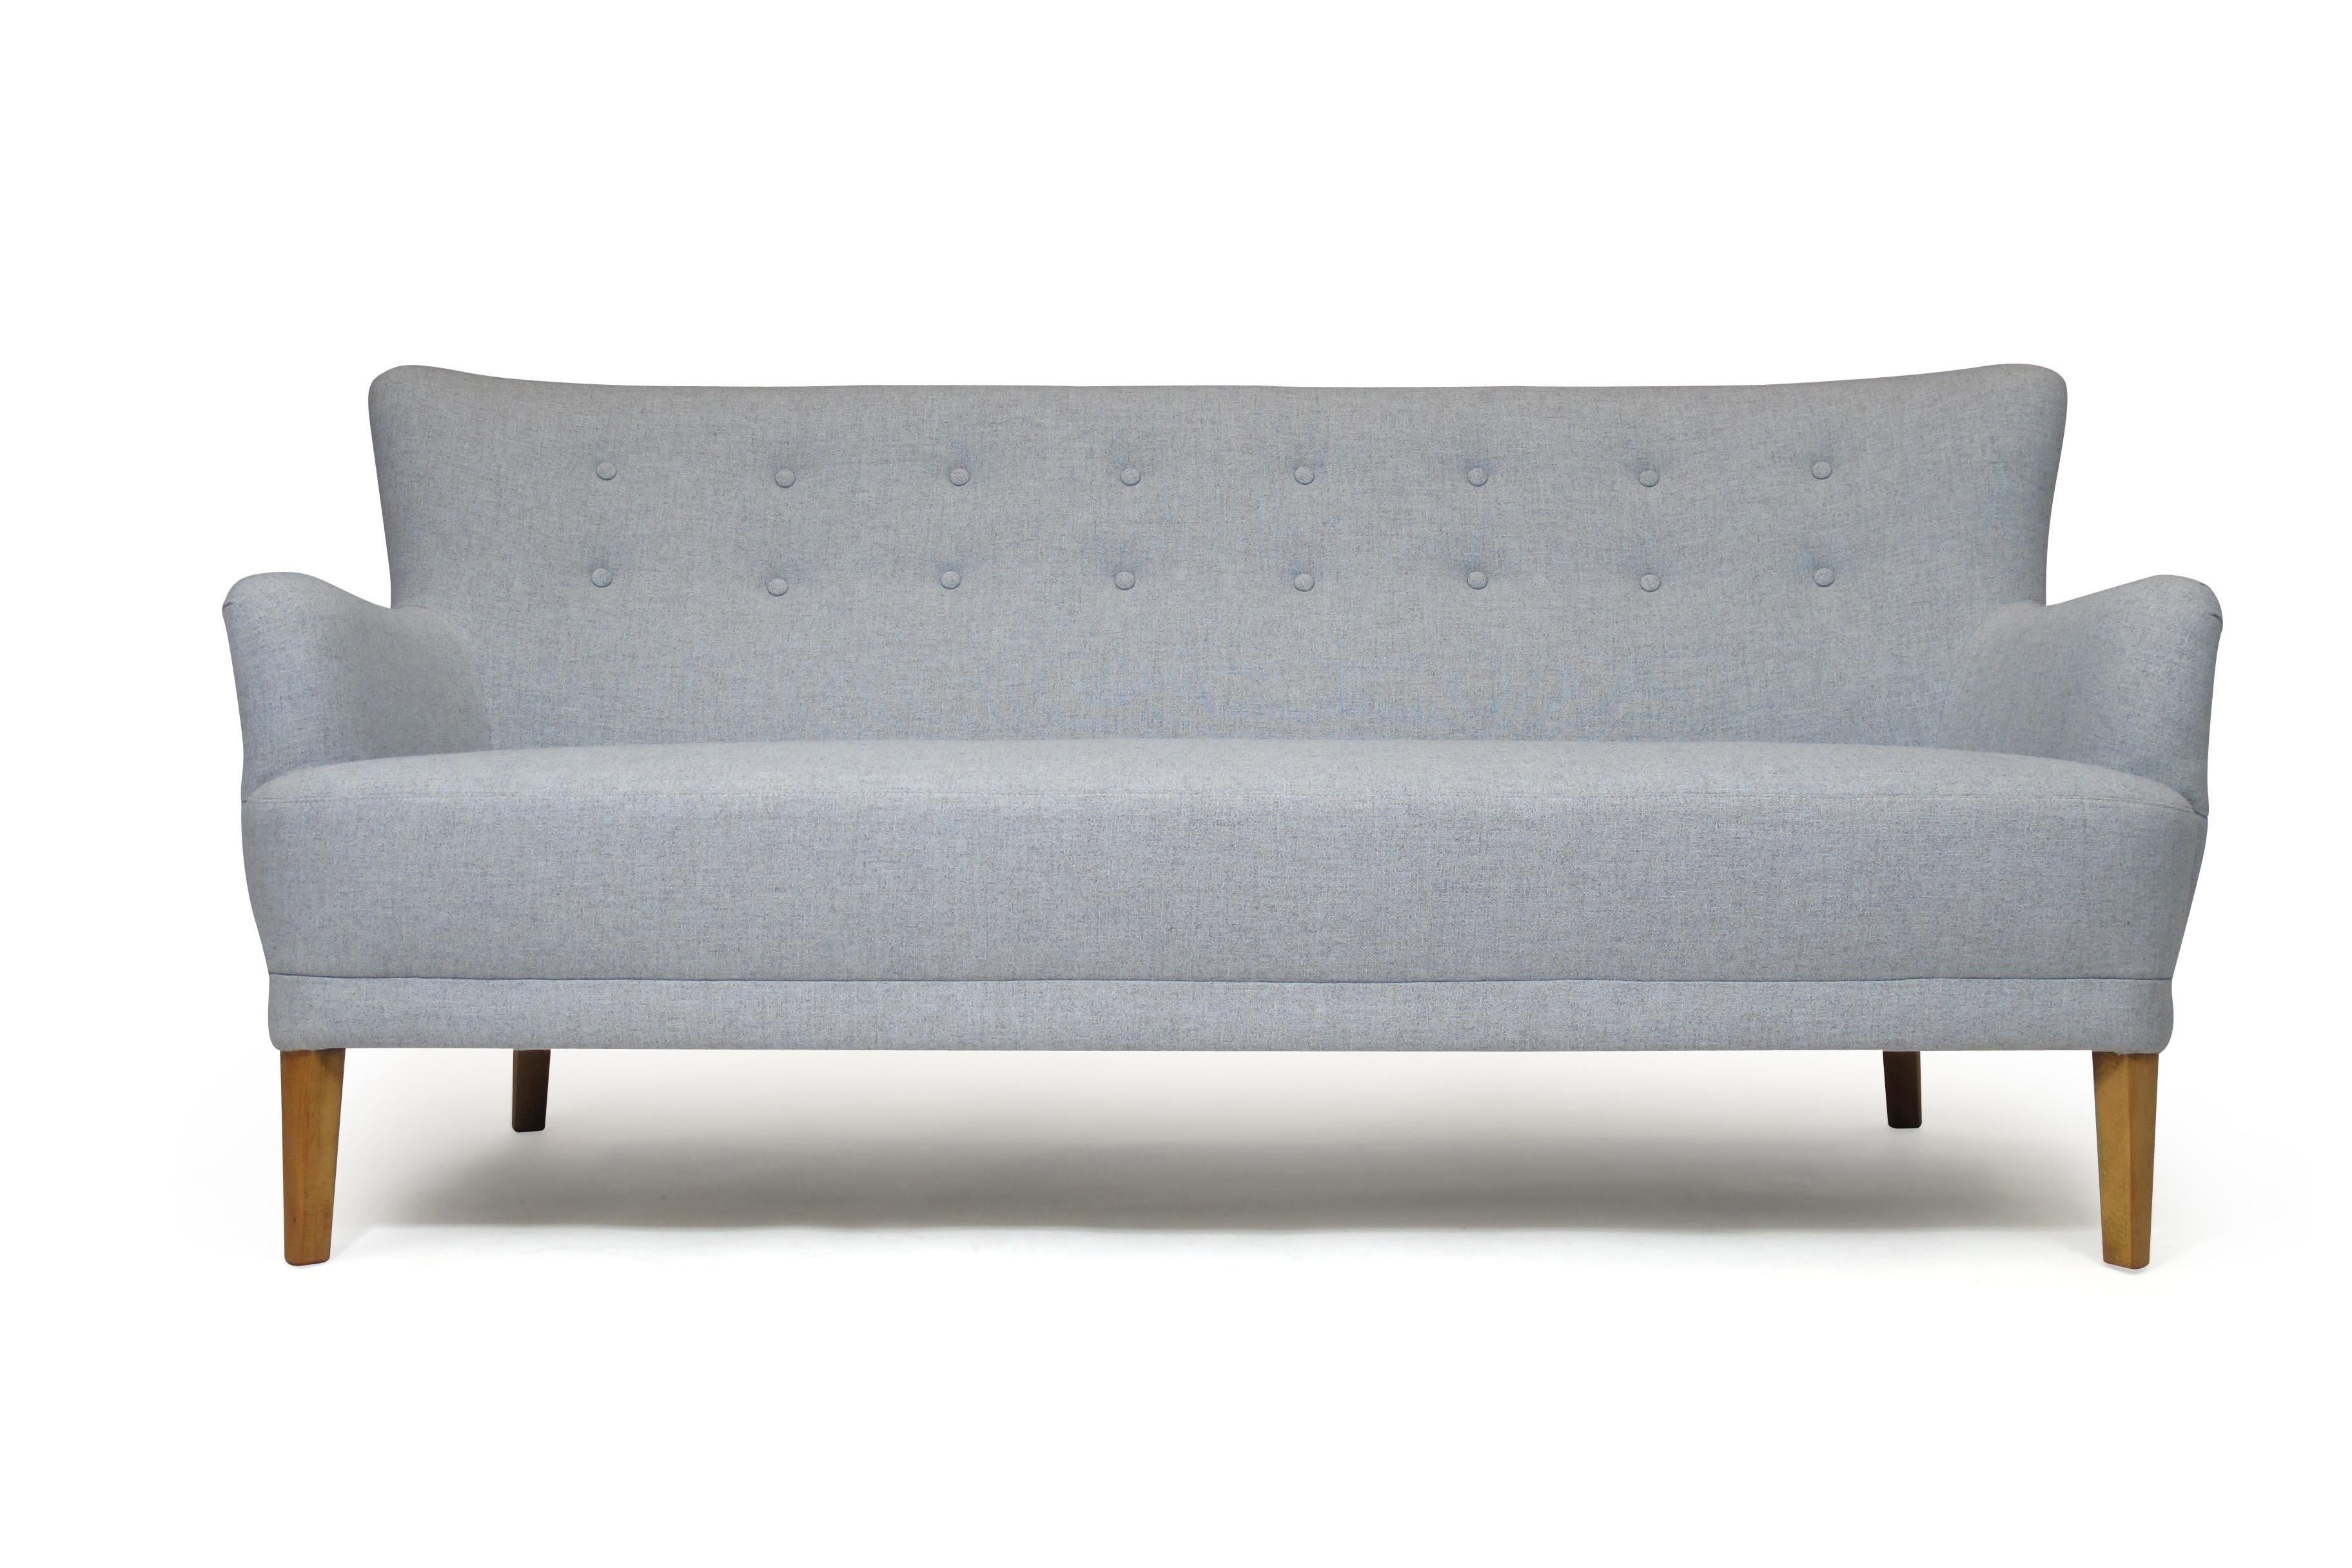 Scandinavian Modern Kaare Klint Danish Designed Sofa